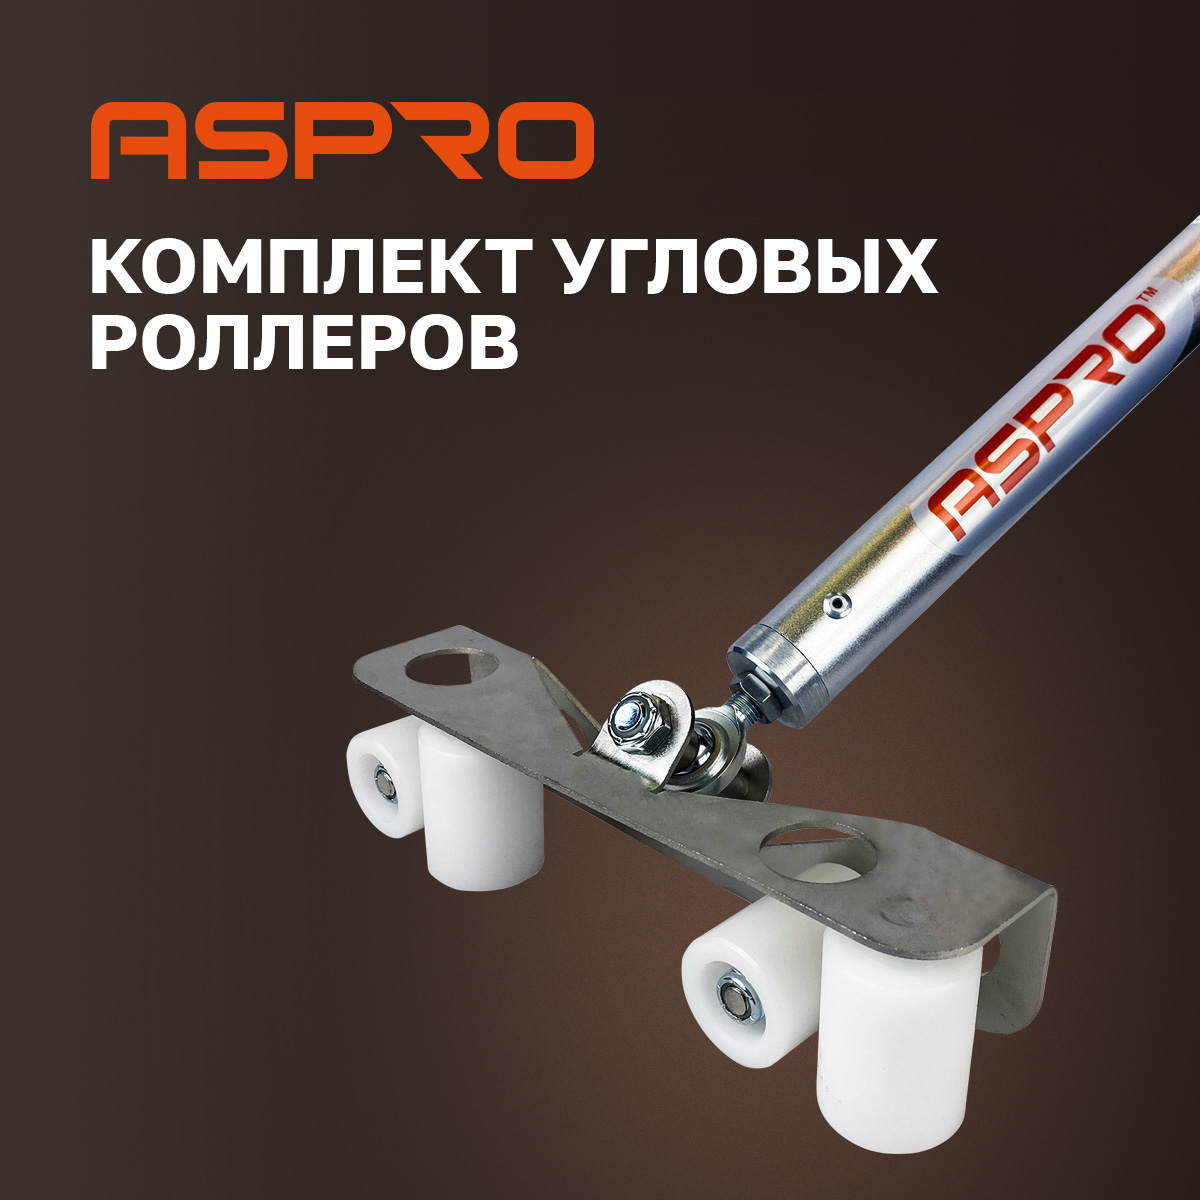 Комплект угловых роллеров Aspro, 102280 комплект угловых профилей для грядок 10мм сотка